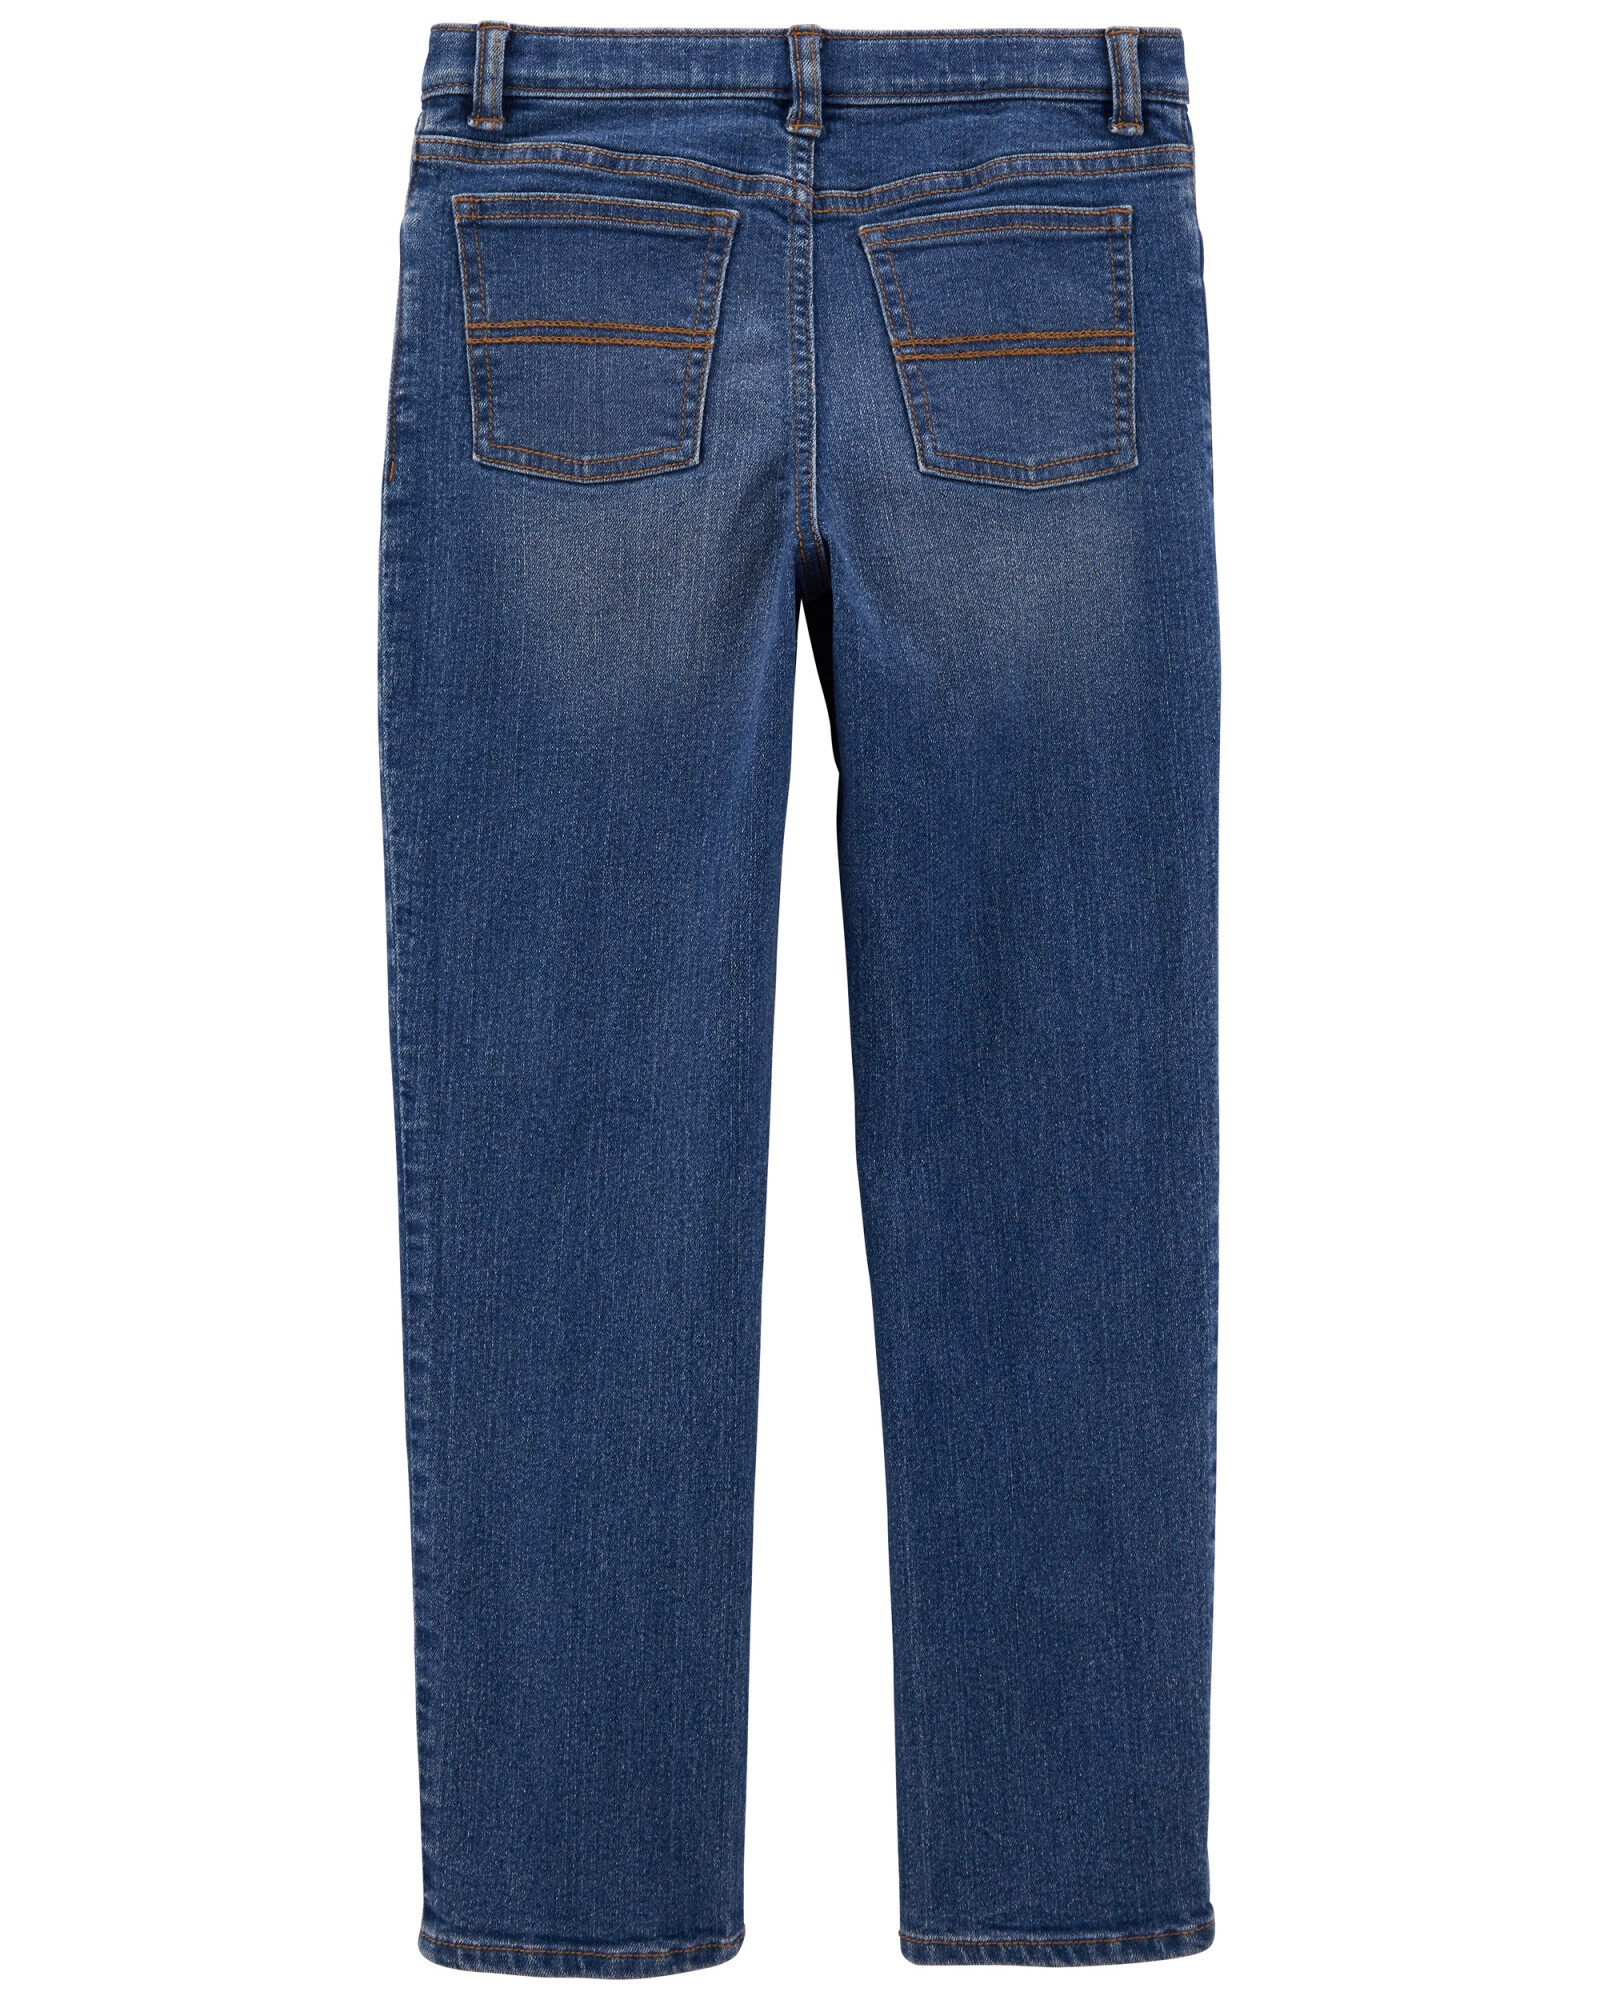 Pantalón de jean clásico lavado medio. Talles 5-8 Sin color